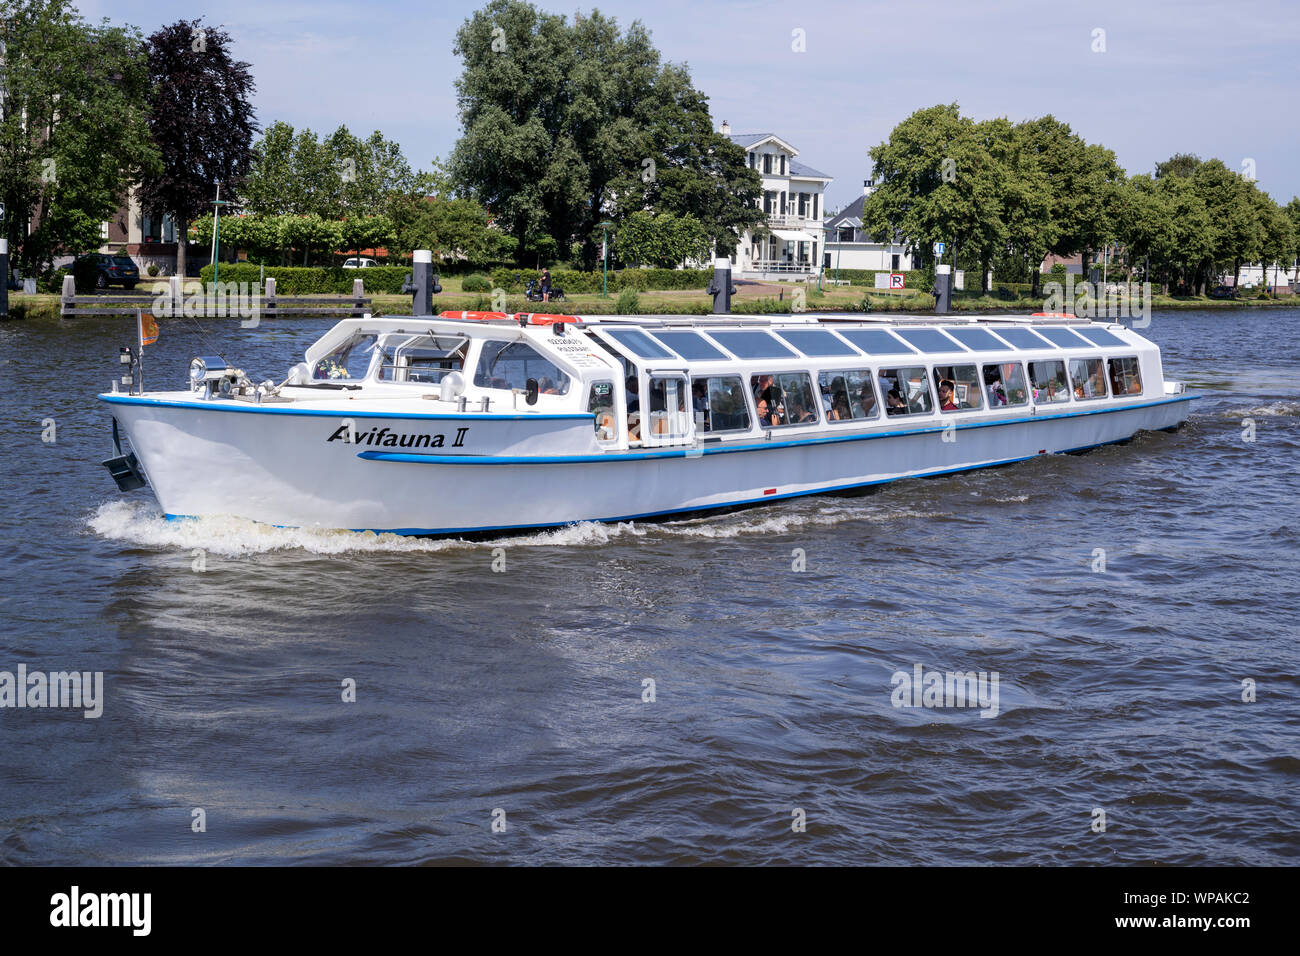 Bateau d'Excursion AVIVAUNA II sur canal cruise. Van der Valk est la plus grande chaîne d'hospitalité néerlandaise et exploite également le Parc des Oiseaux de l'avifaune. Banque D'Images